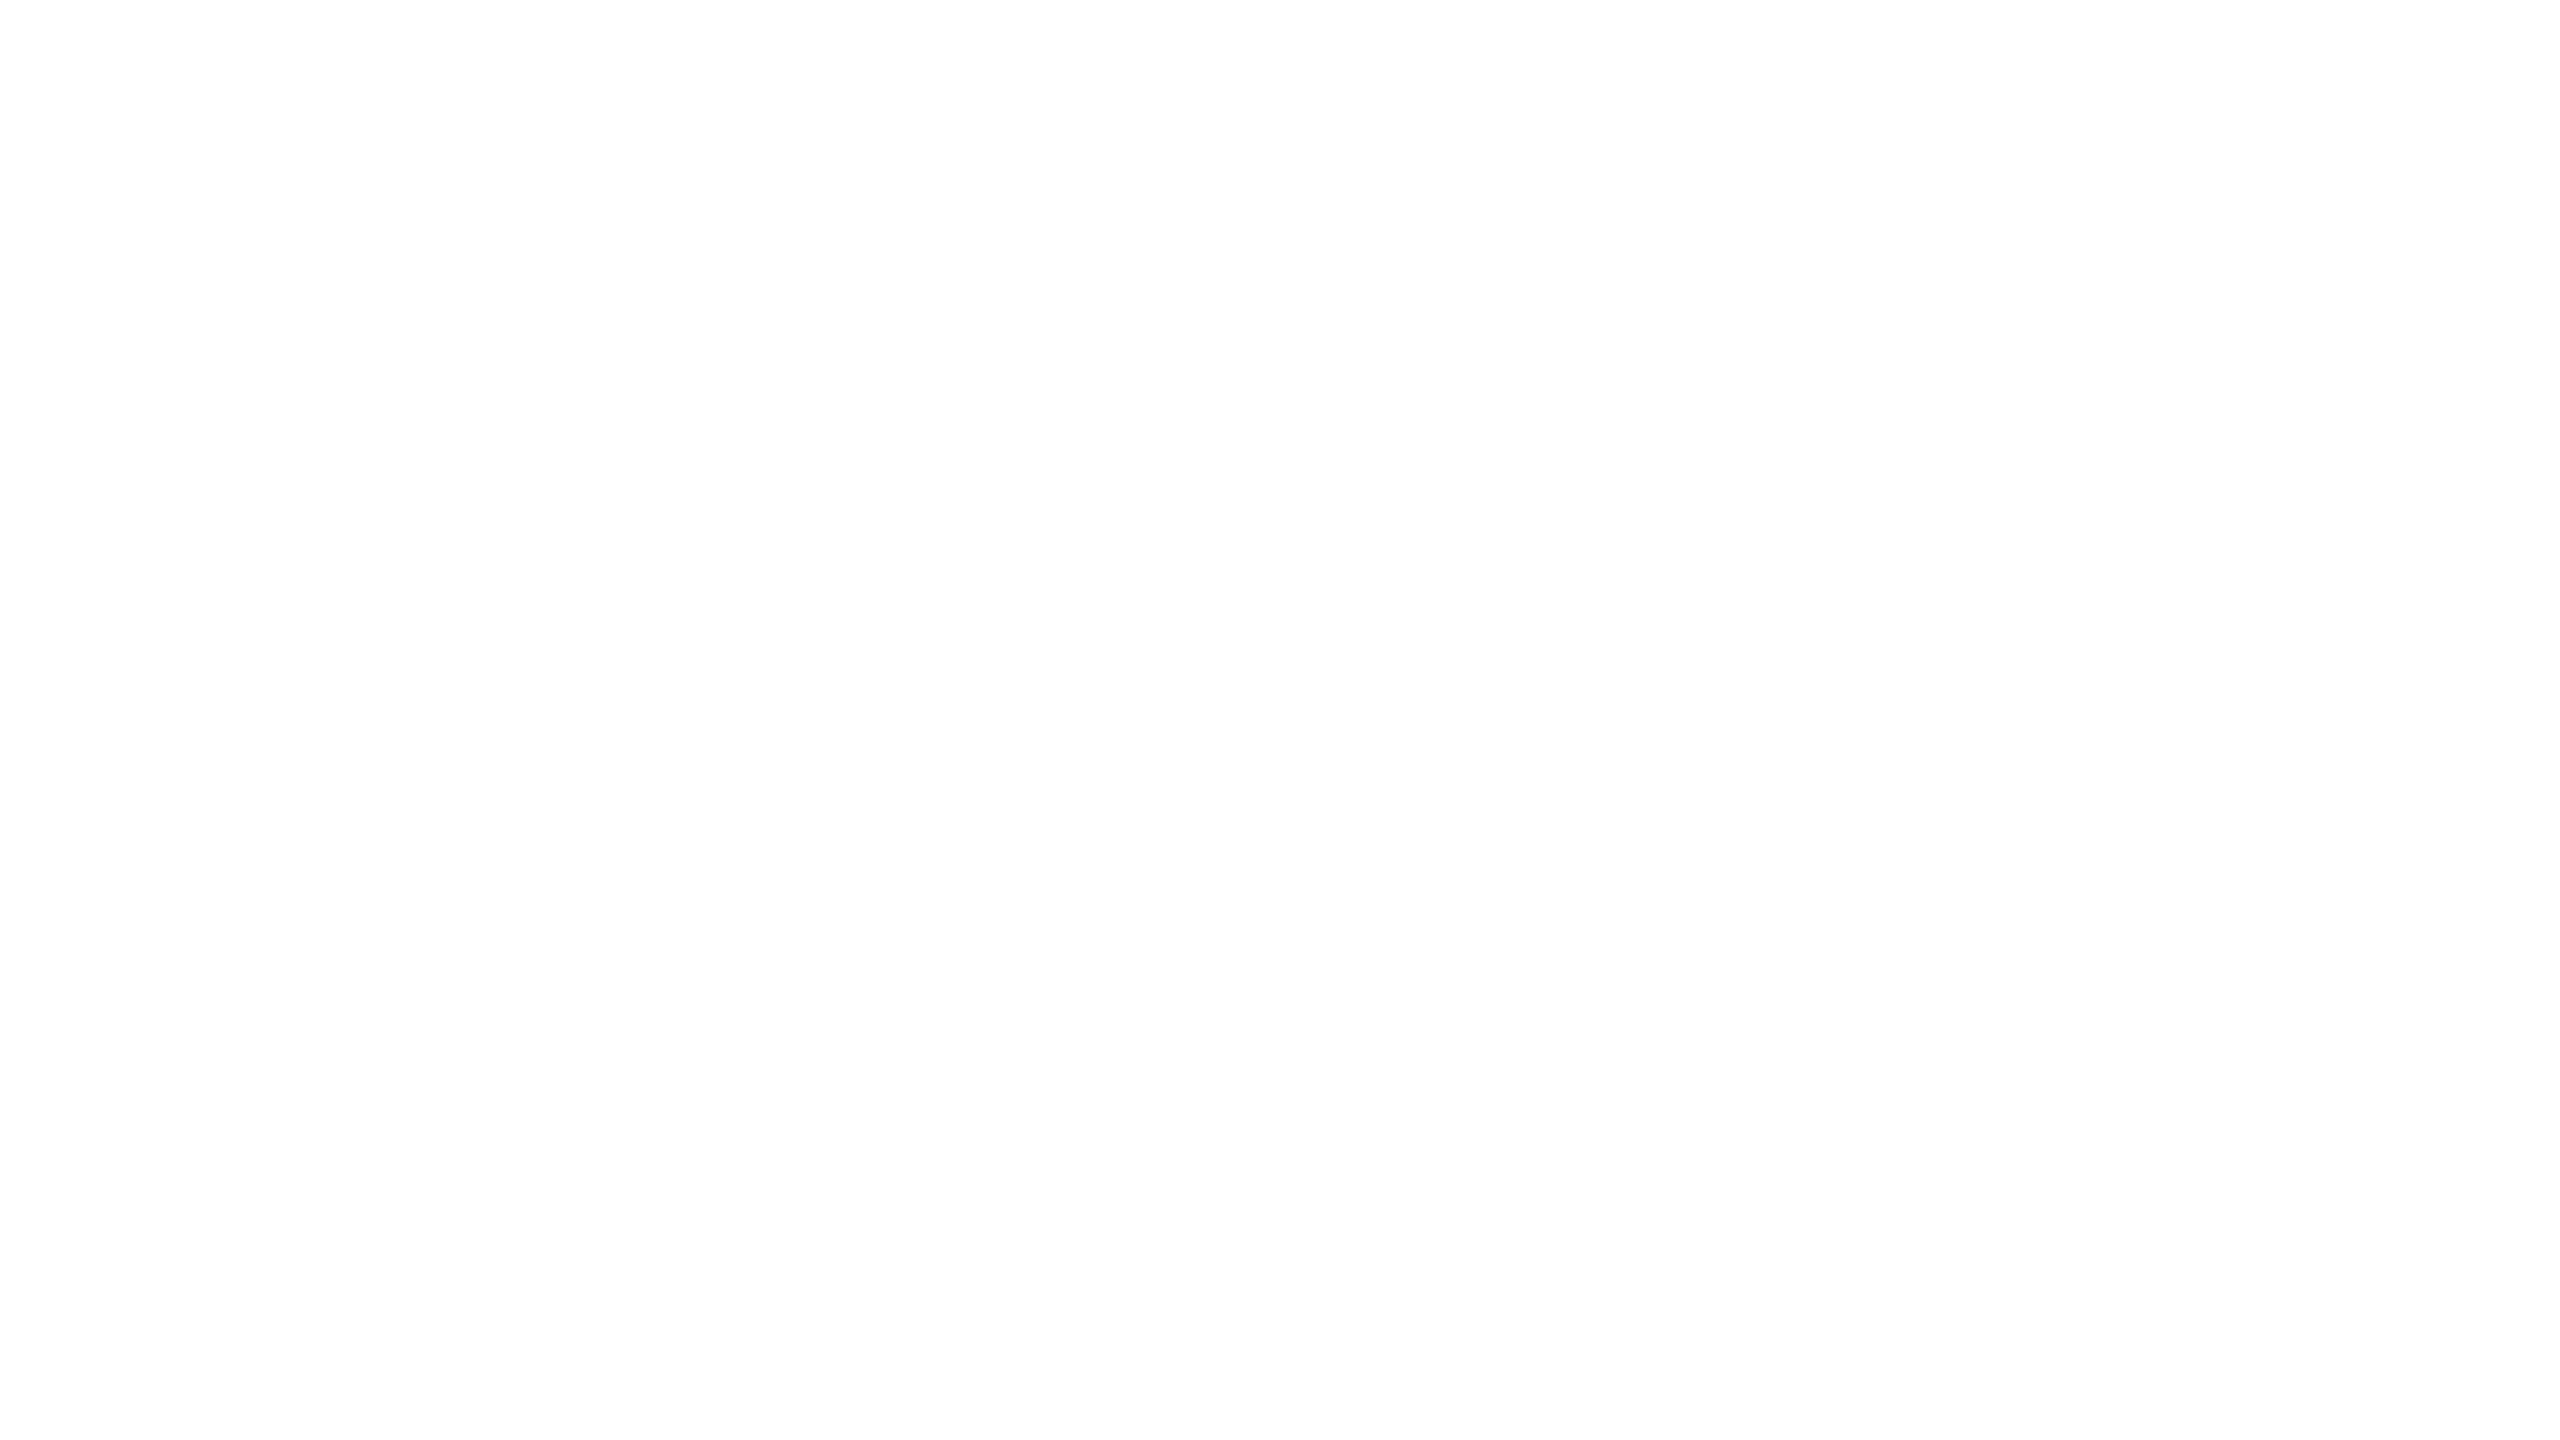 fs1-logo